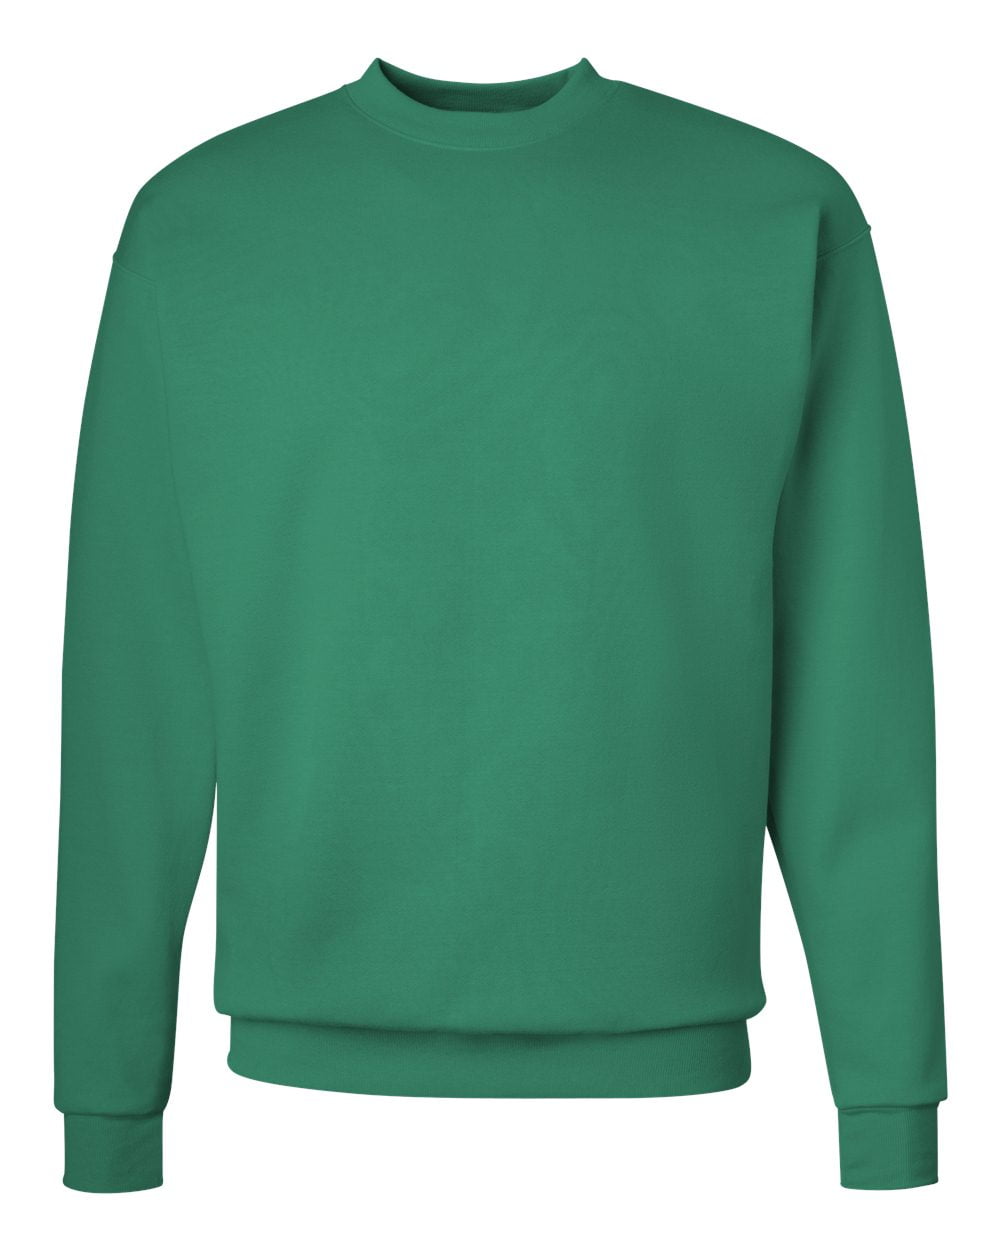 Download Hanes - Hanes P1607 Men's Crewneck Sweatshirt - Kelly ...